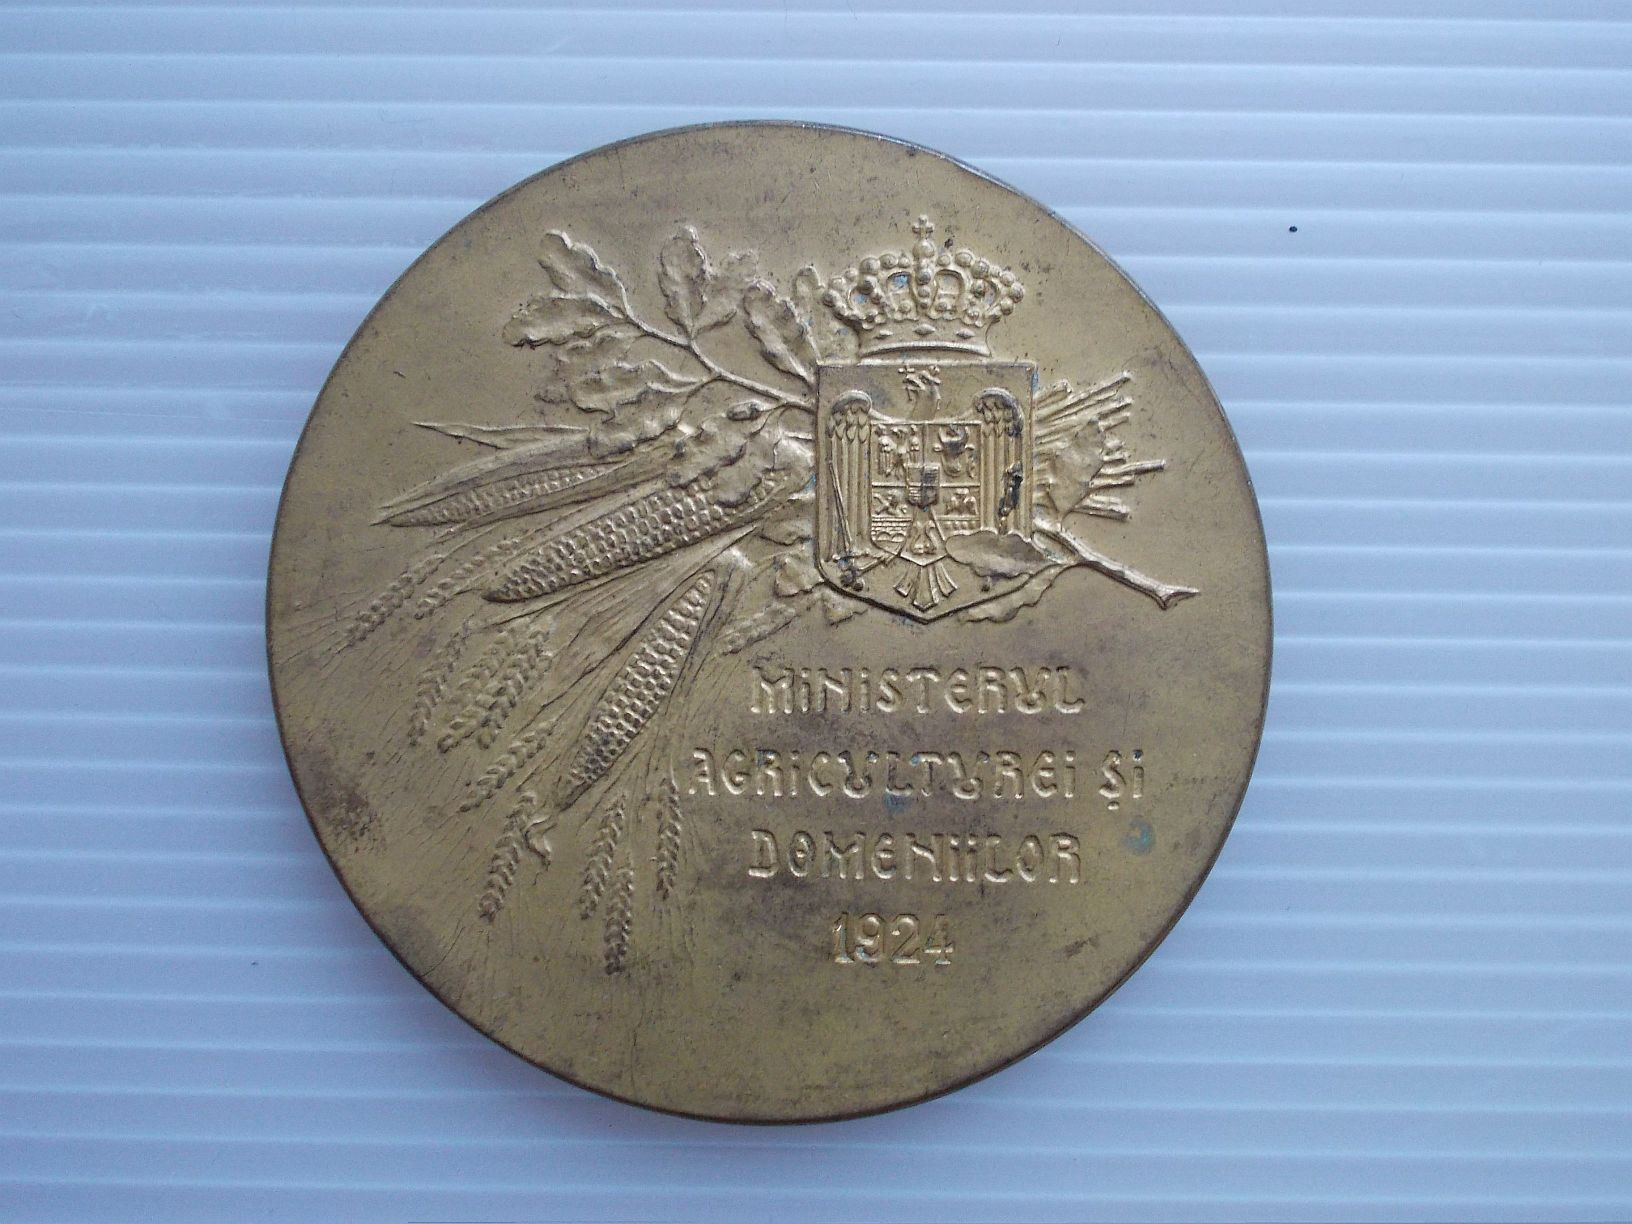 Romania 1924 - Medalie Ministerul Agriculturei si Domeniilor